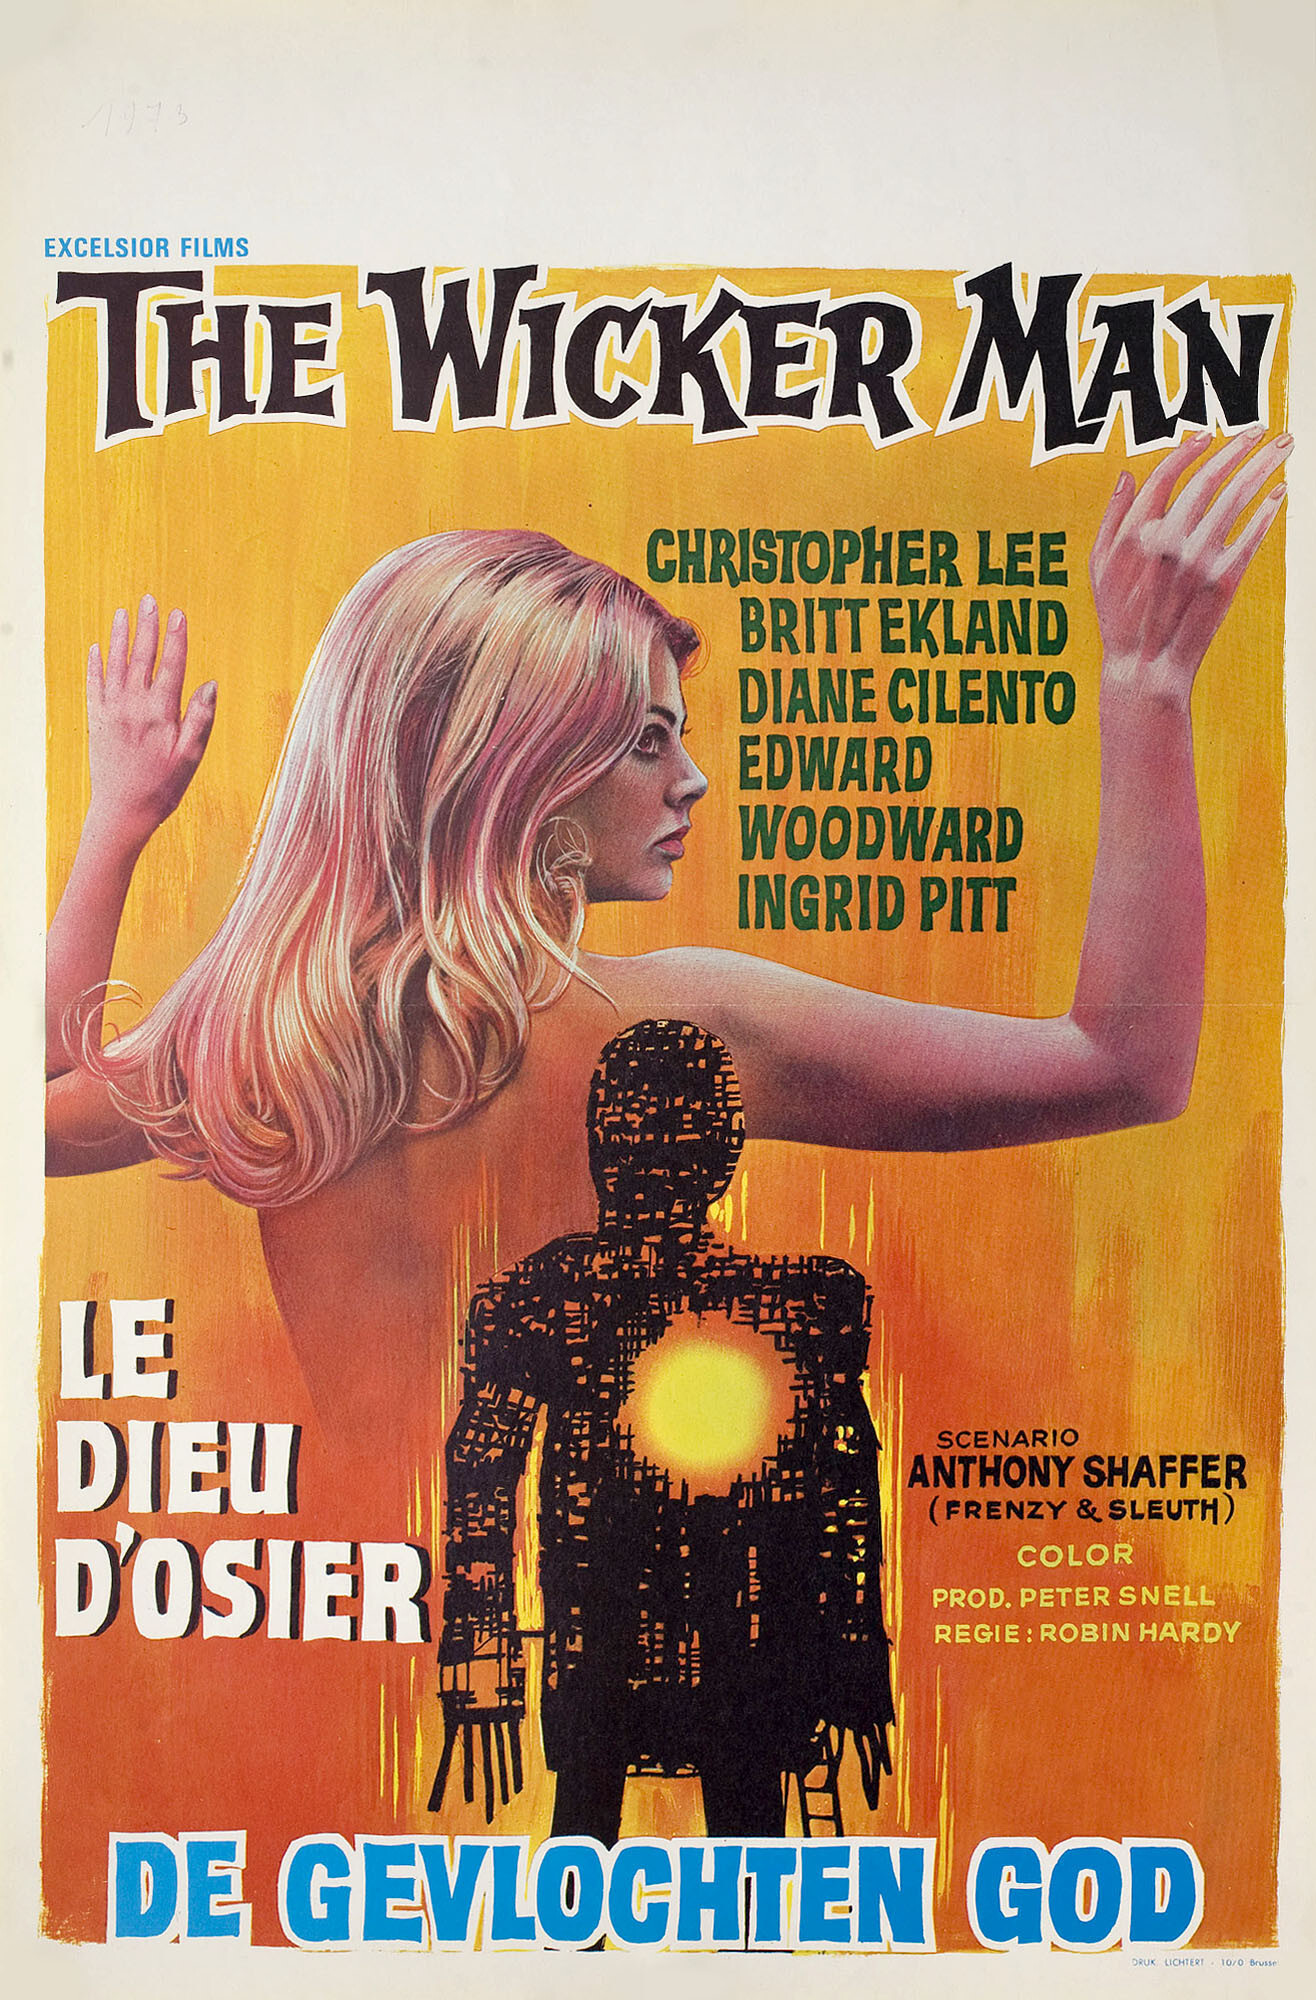 Плетеный человек (The Wicker Man, 1973), режиссёр Робин Харди, бельгийский постер к фильму (ужасы, 1973 год)